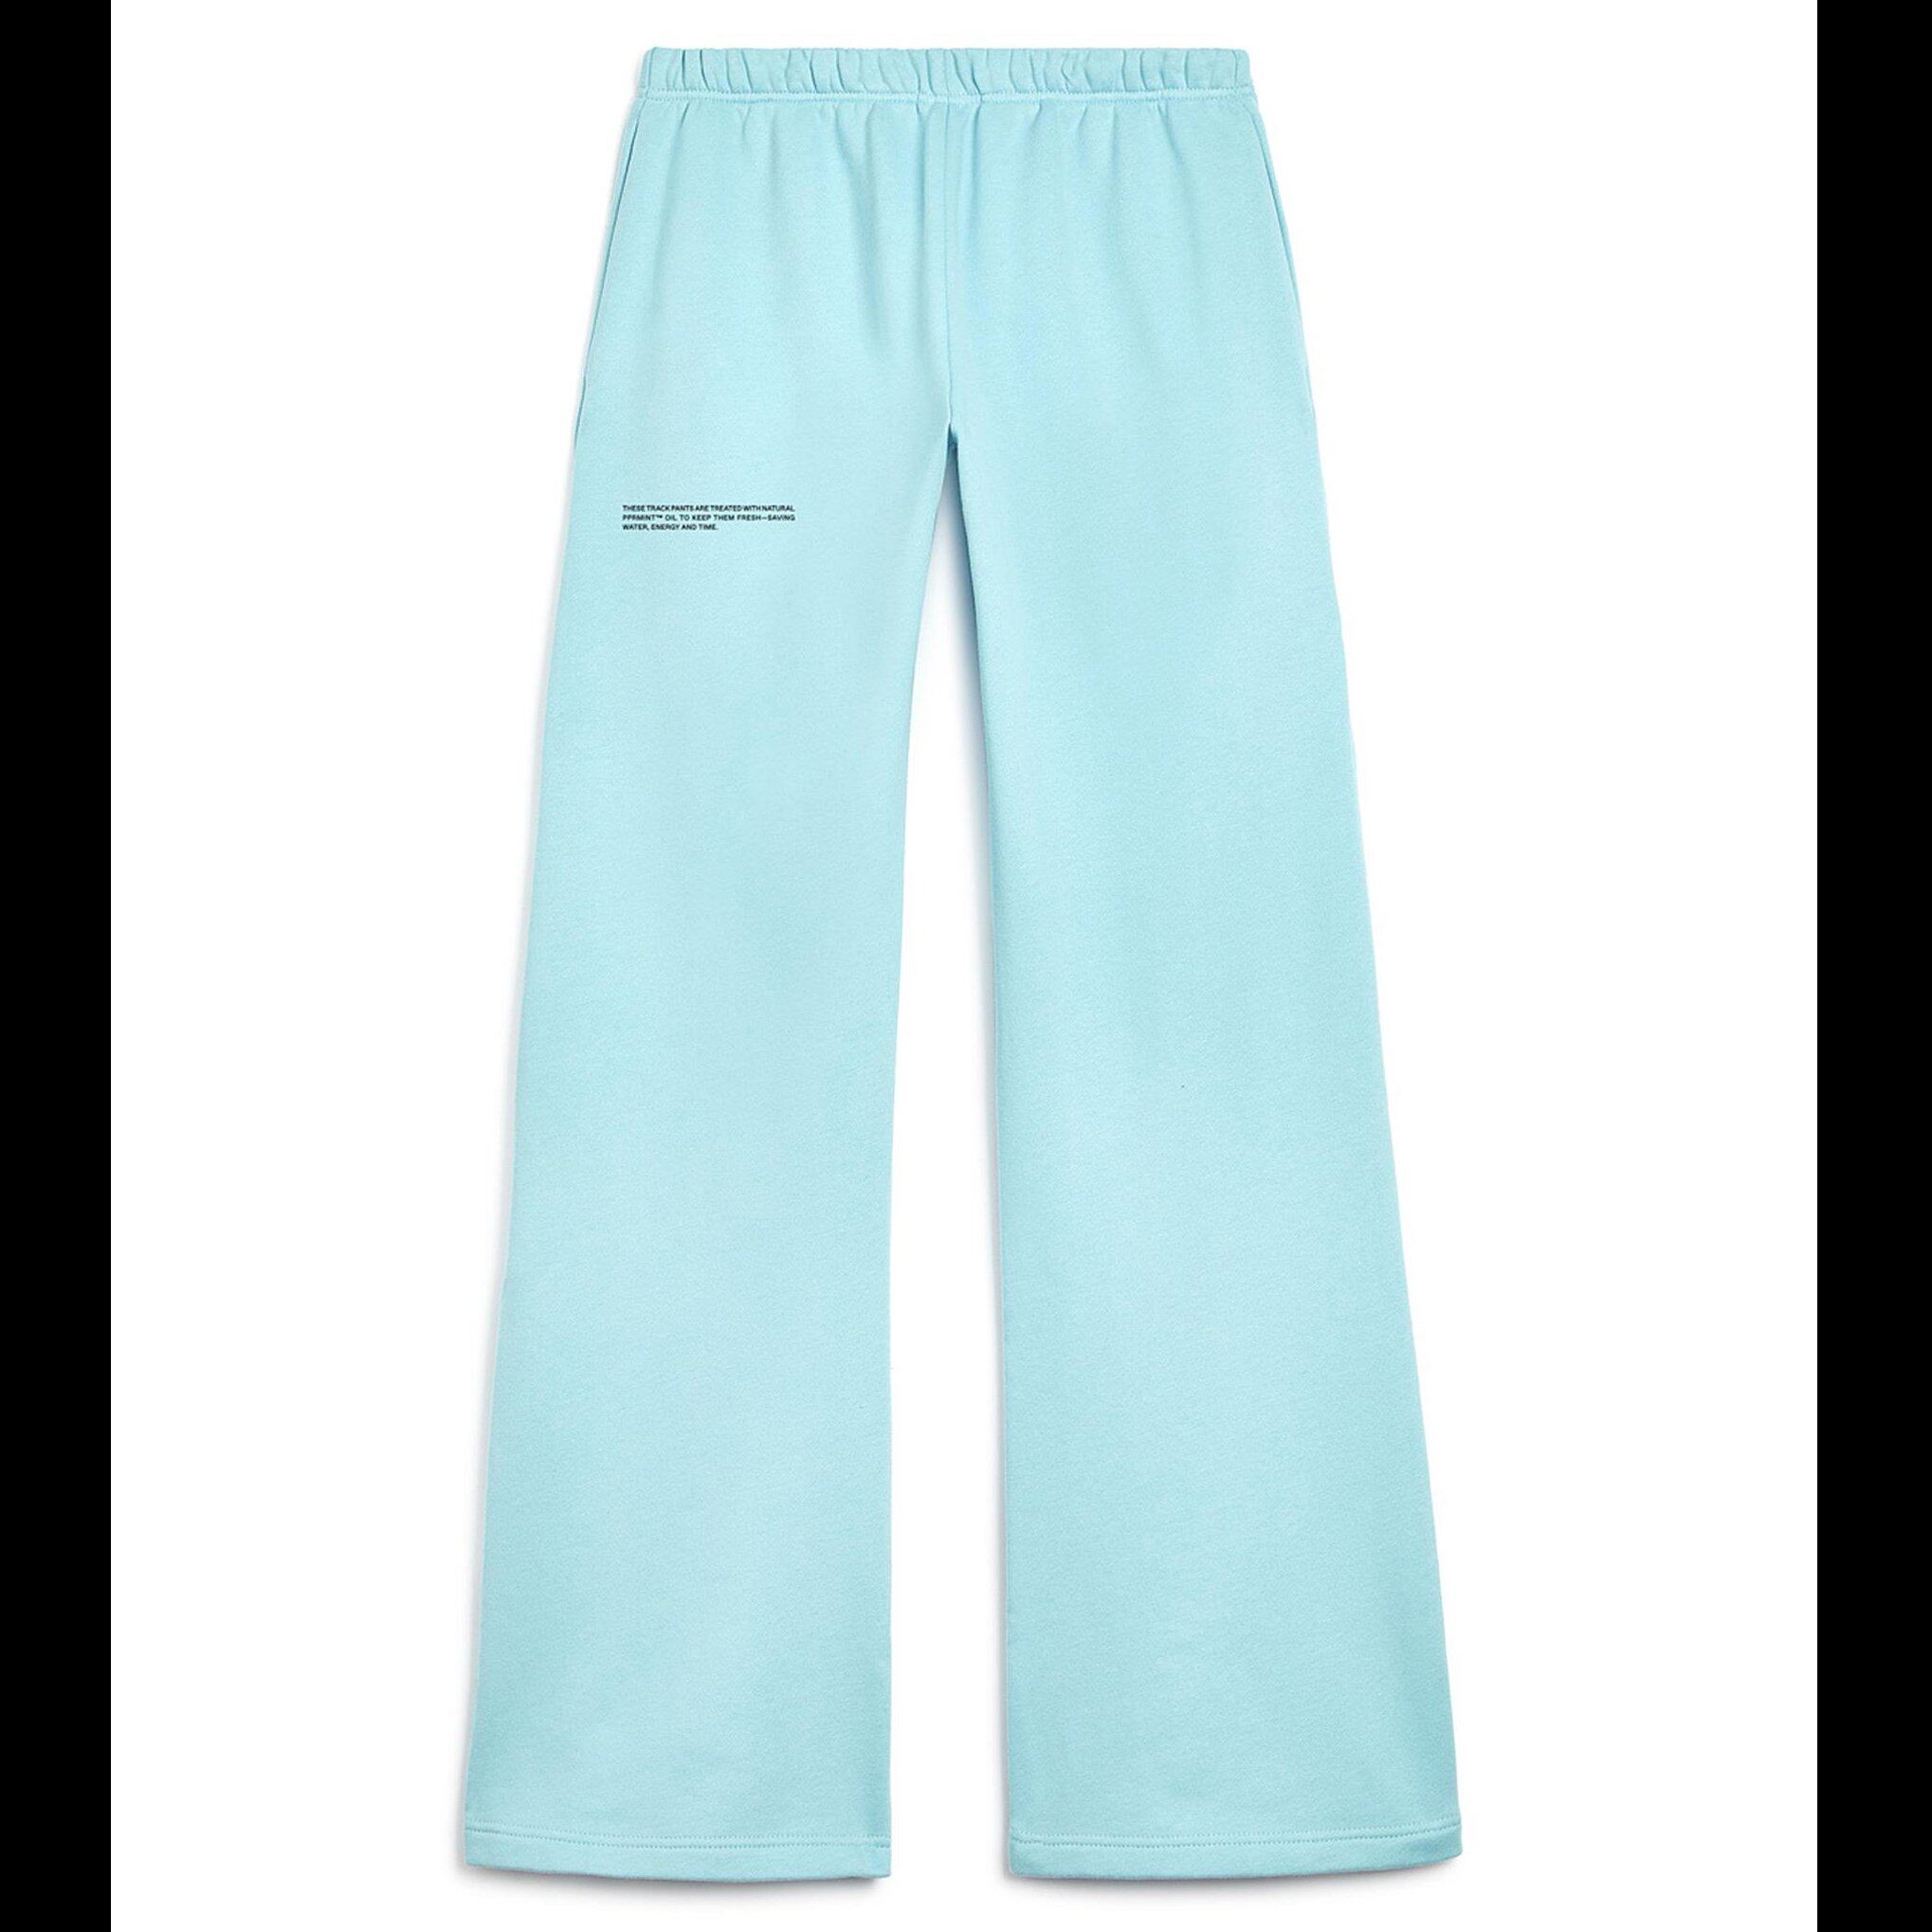 PANGAIA light blueflared organic cotton track pants